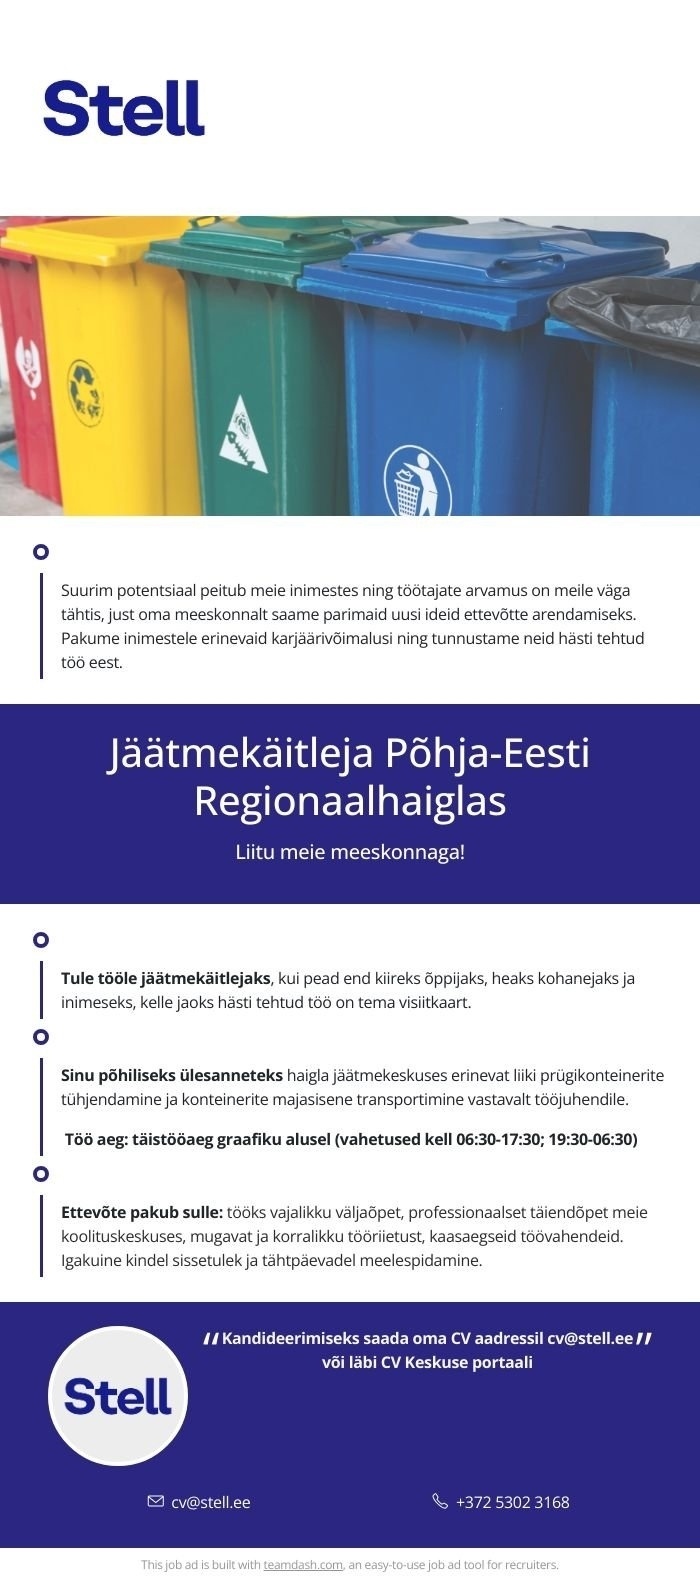 Stell Eesti AS Jäätmekäitleja Põhja-Eesti Regionaalhaiglas